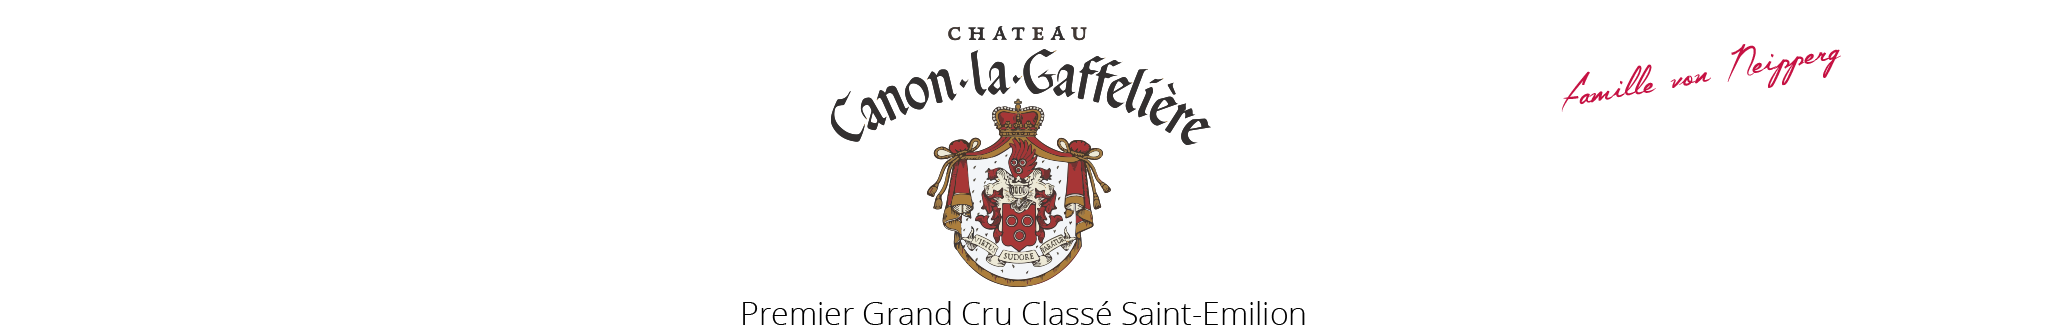 Château Canon-La Gaffelière 